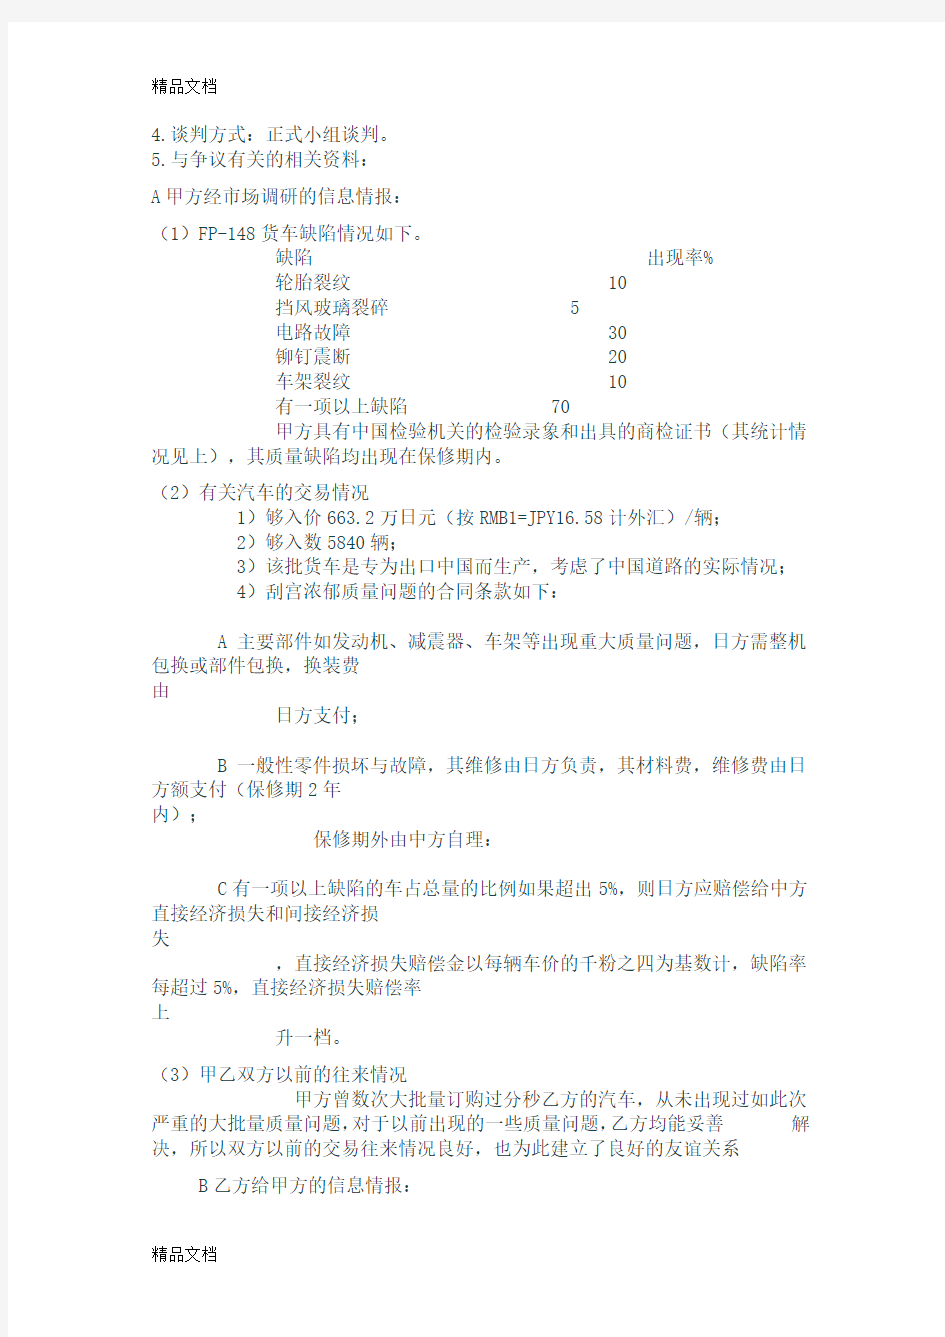 商务谈判策划书(中国进出口贸易公司与三菱重工)资料